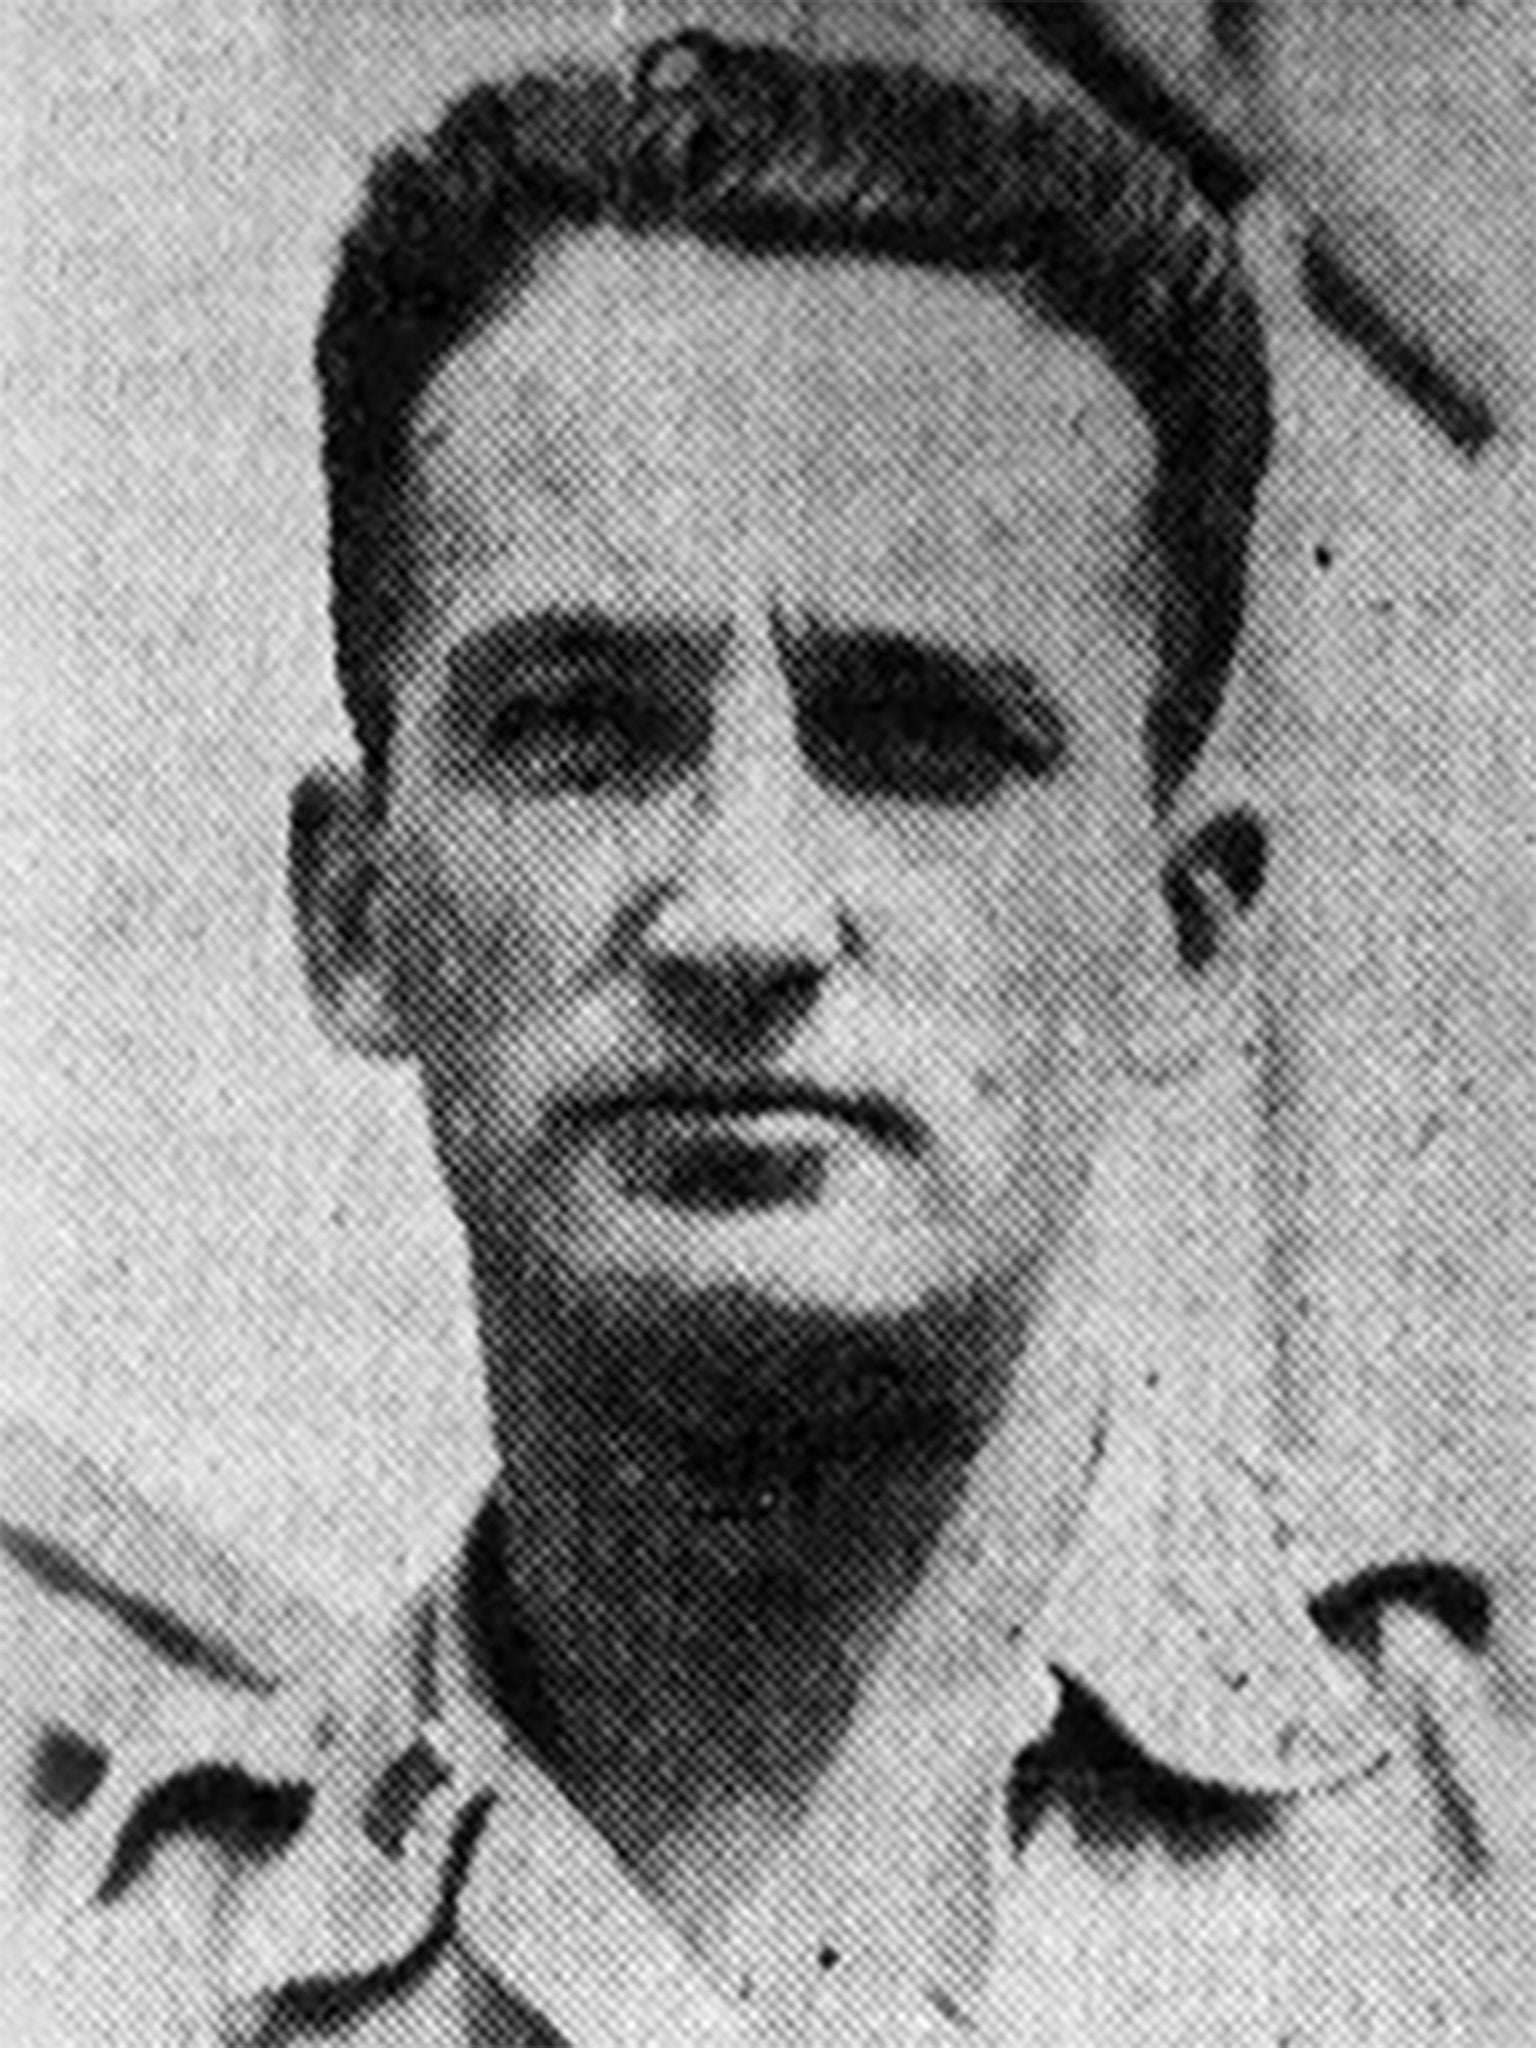 El teniente Ambrose Finnegan Jr., o "tío Bosie", desapareció en combate en la Segunda Guerra Mundial.